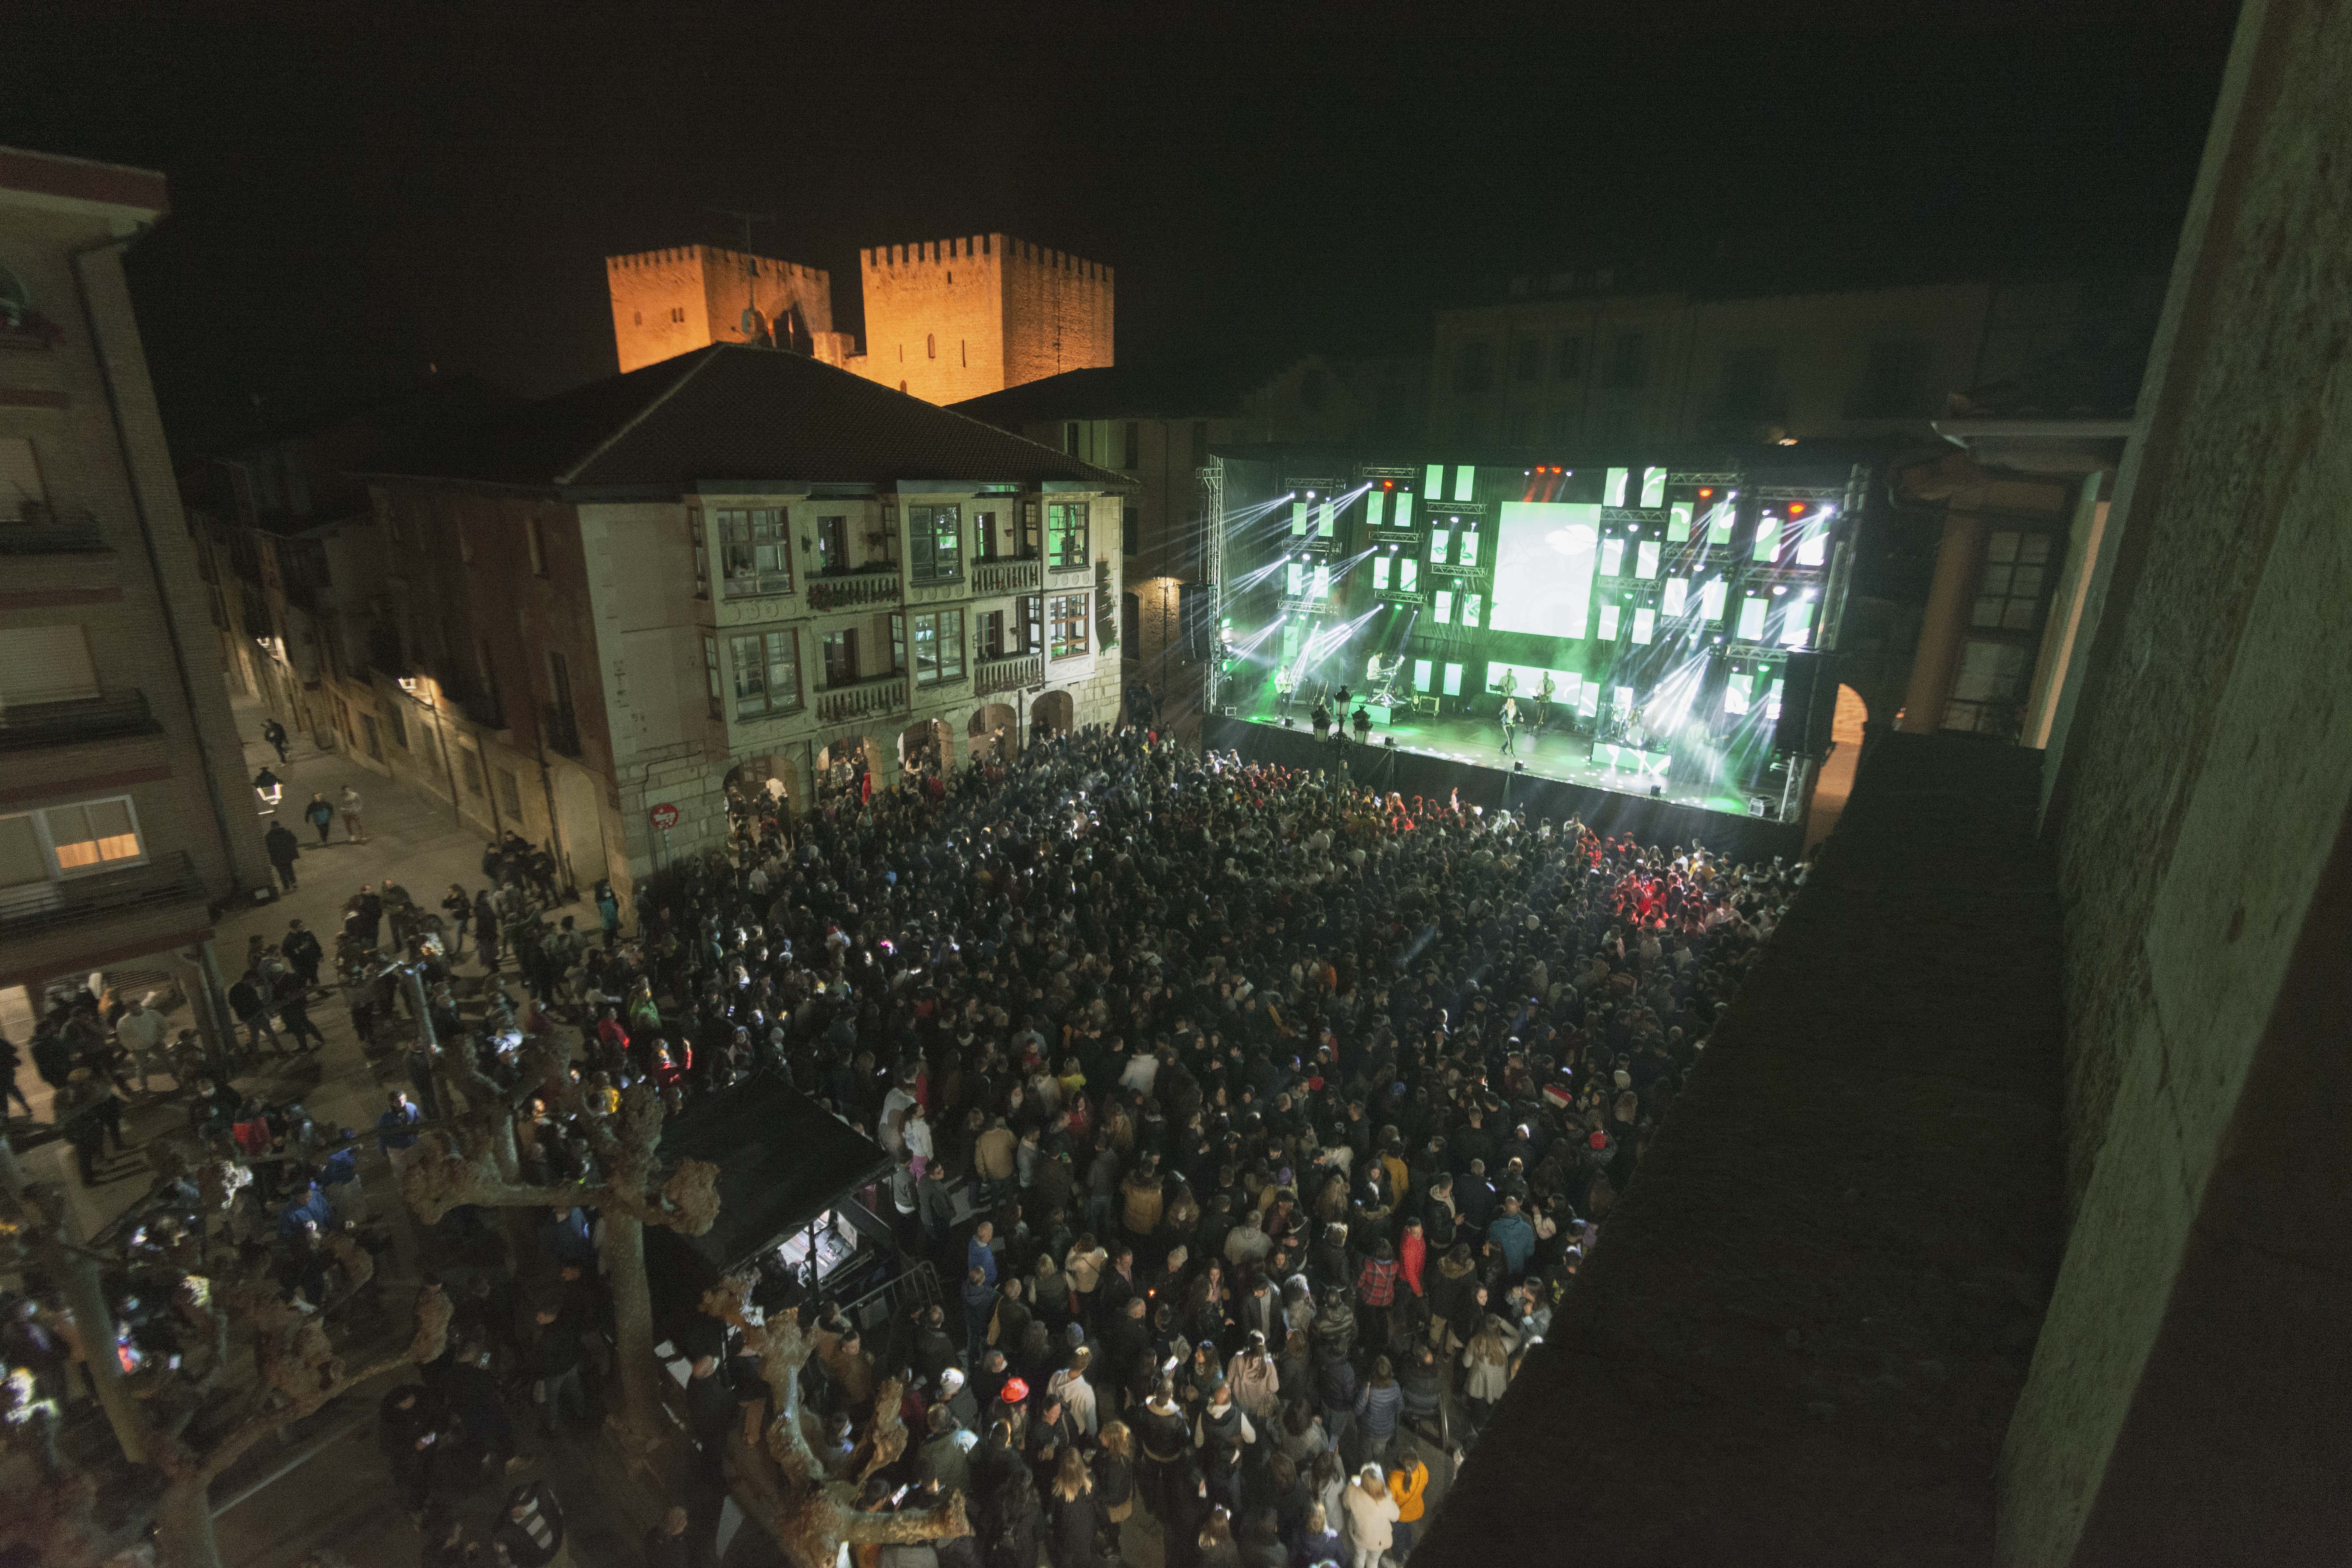 Incidencia a la baja a más de 2 semanas de las fiestas del Rosario en Medina de Pomar